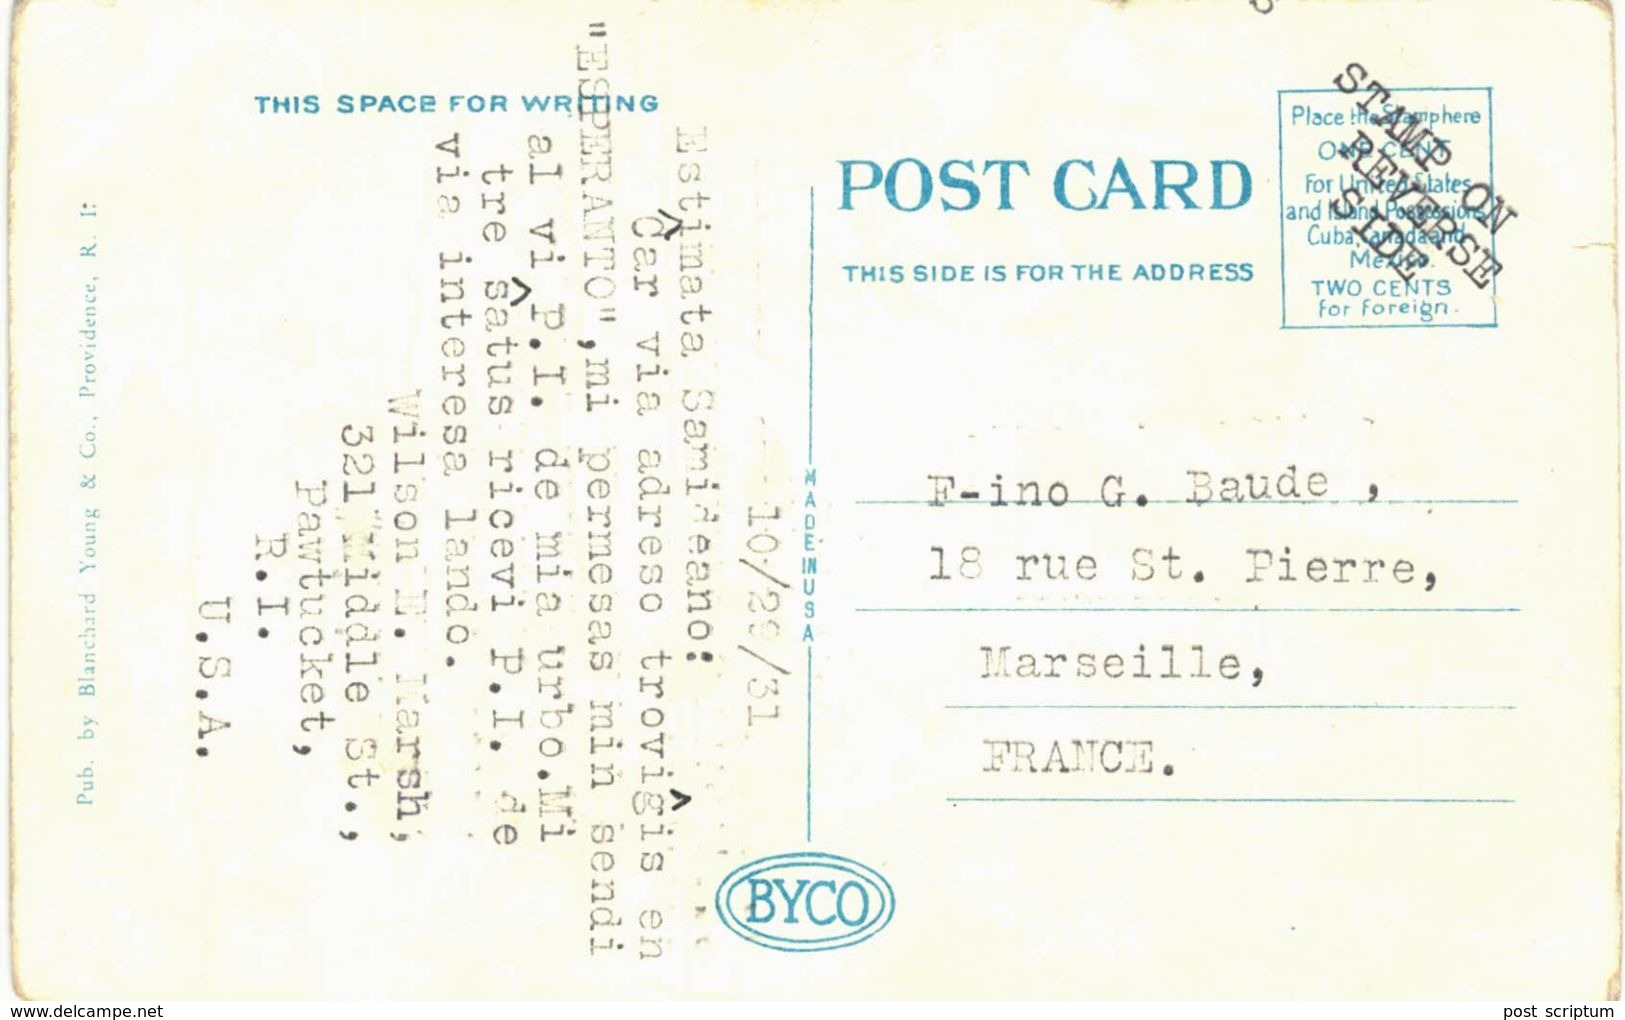 Amérique - Etats-Unis - Pawtucket Post Office - Pawtucket